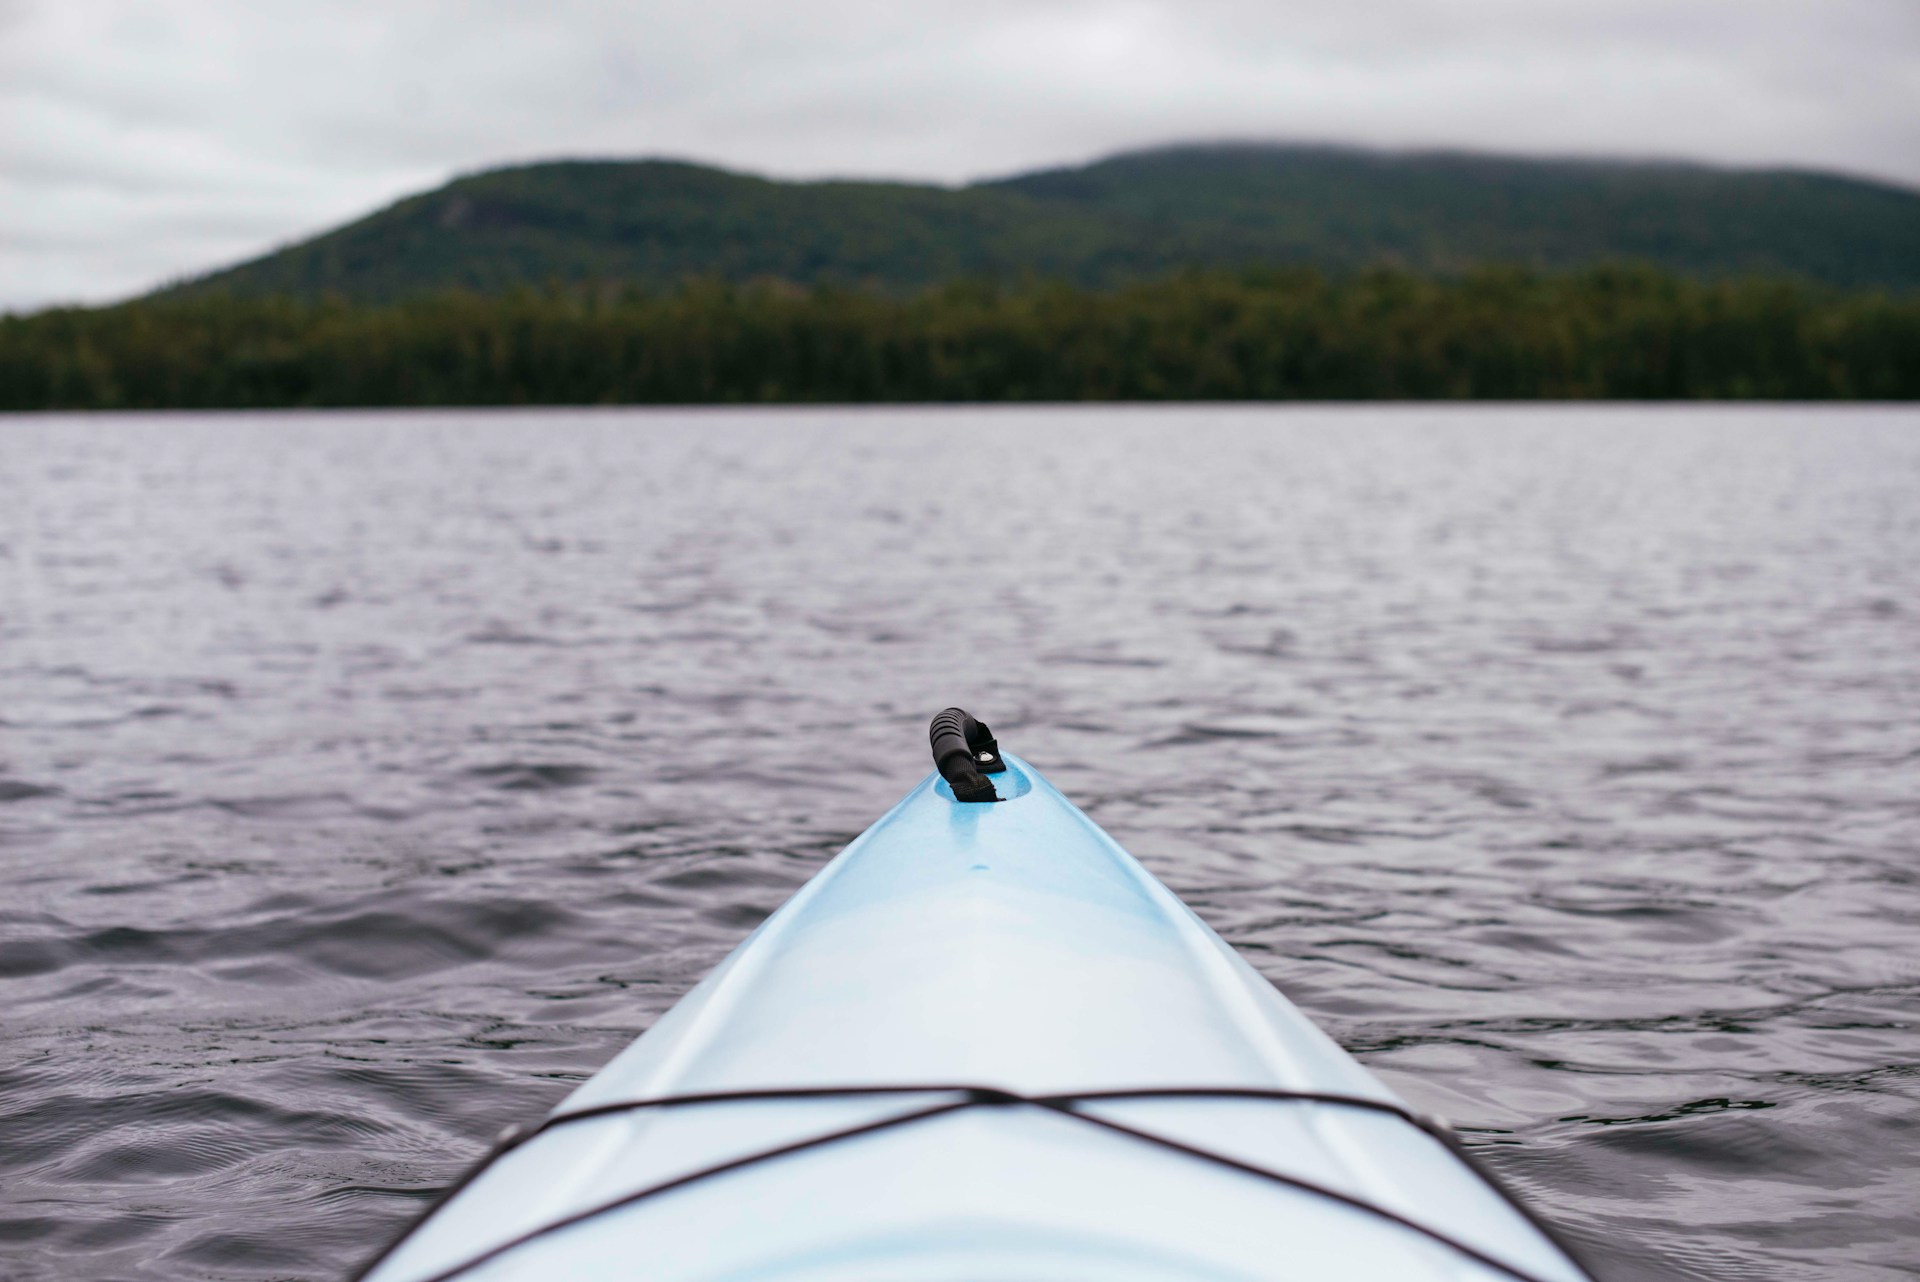 Kayaking in a lake